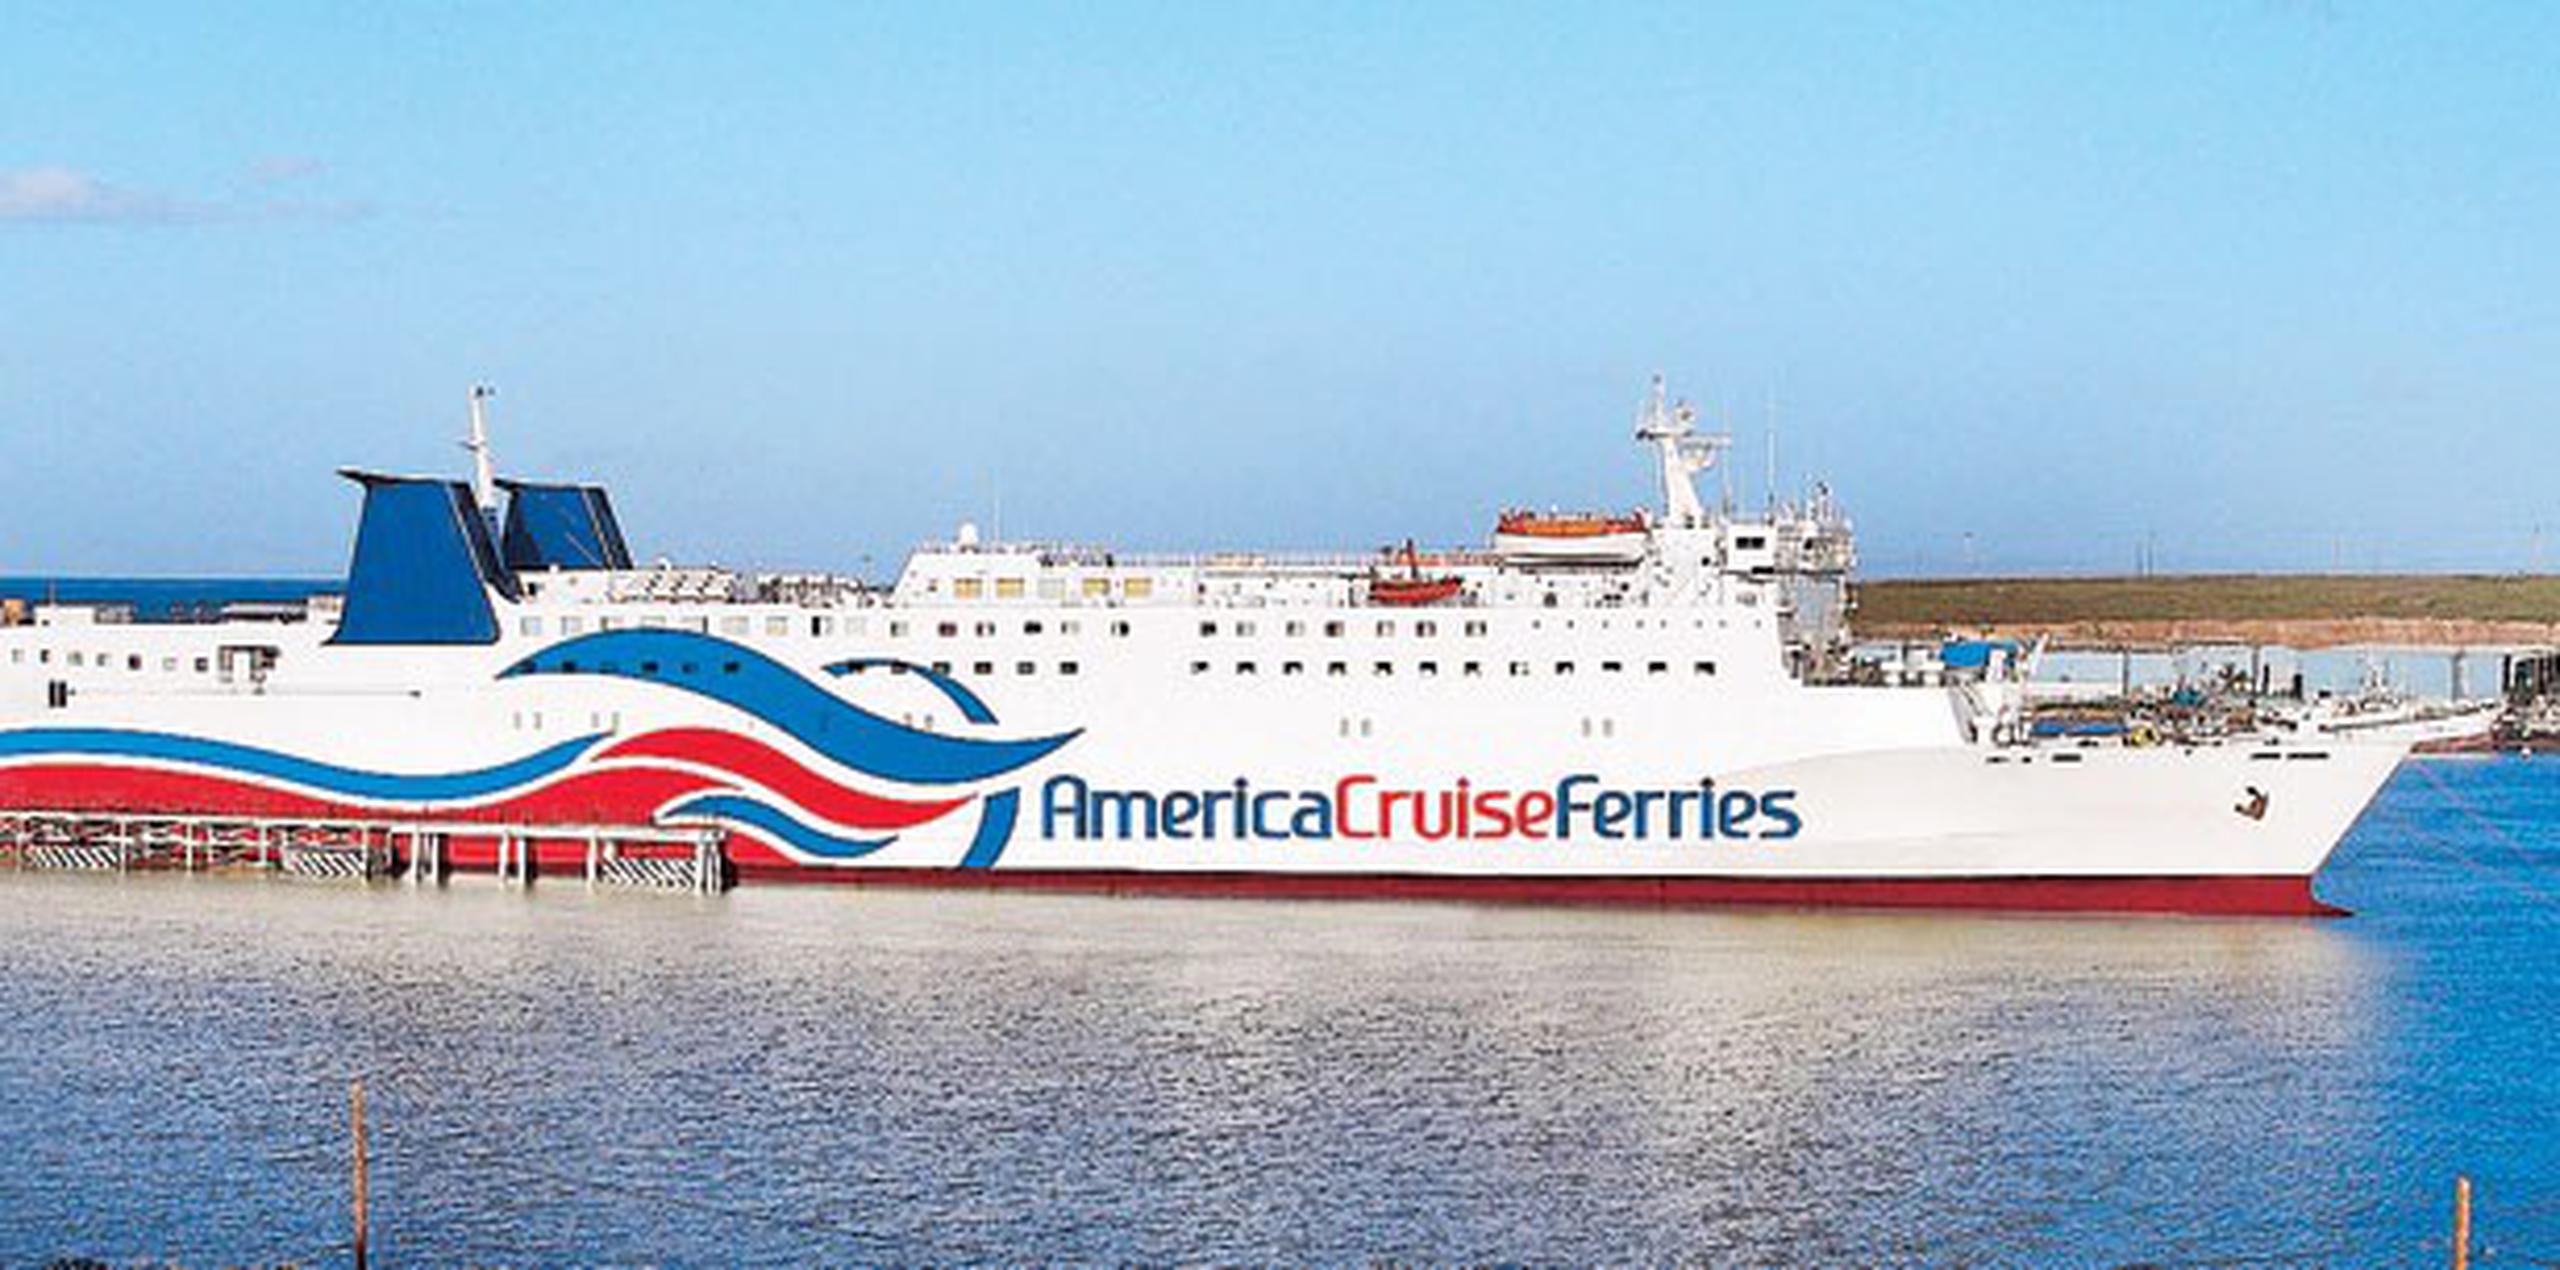 America Cruise Ferries ha transportado en el transcurso de la última década a más de un millón de pasajeros y 210,000 automóviles entre Puerto Rico y República Dominicana, lo que la convierte en una de las compañías del sector más importantes del Caribe. (Archivo)